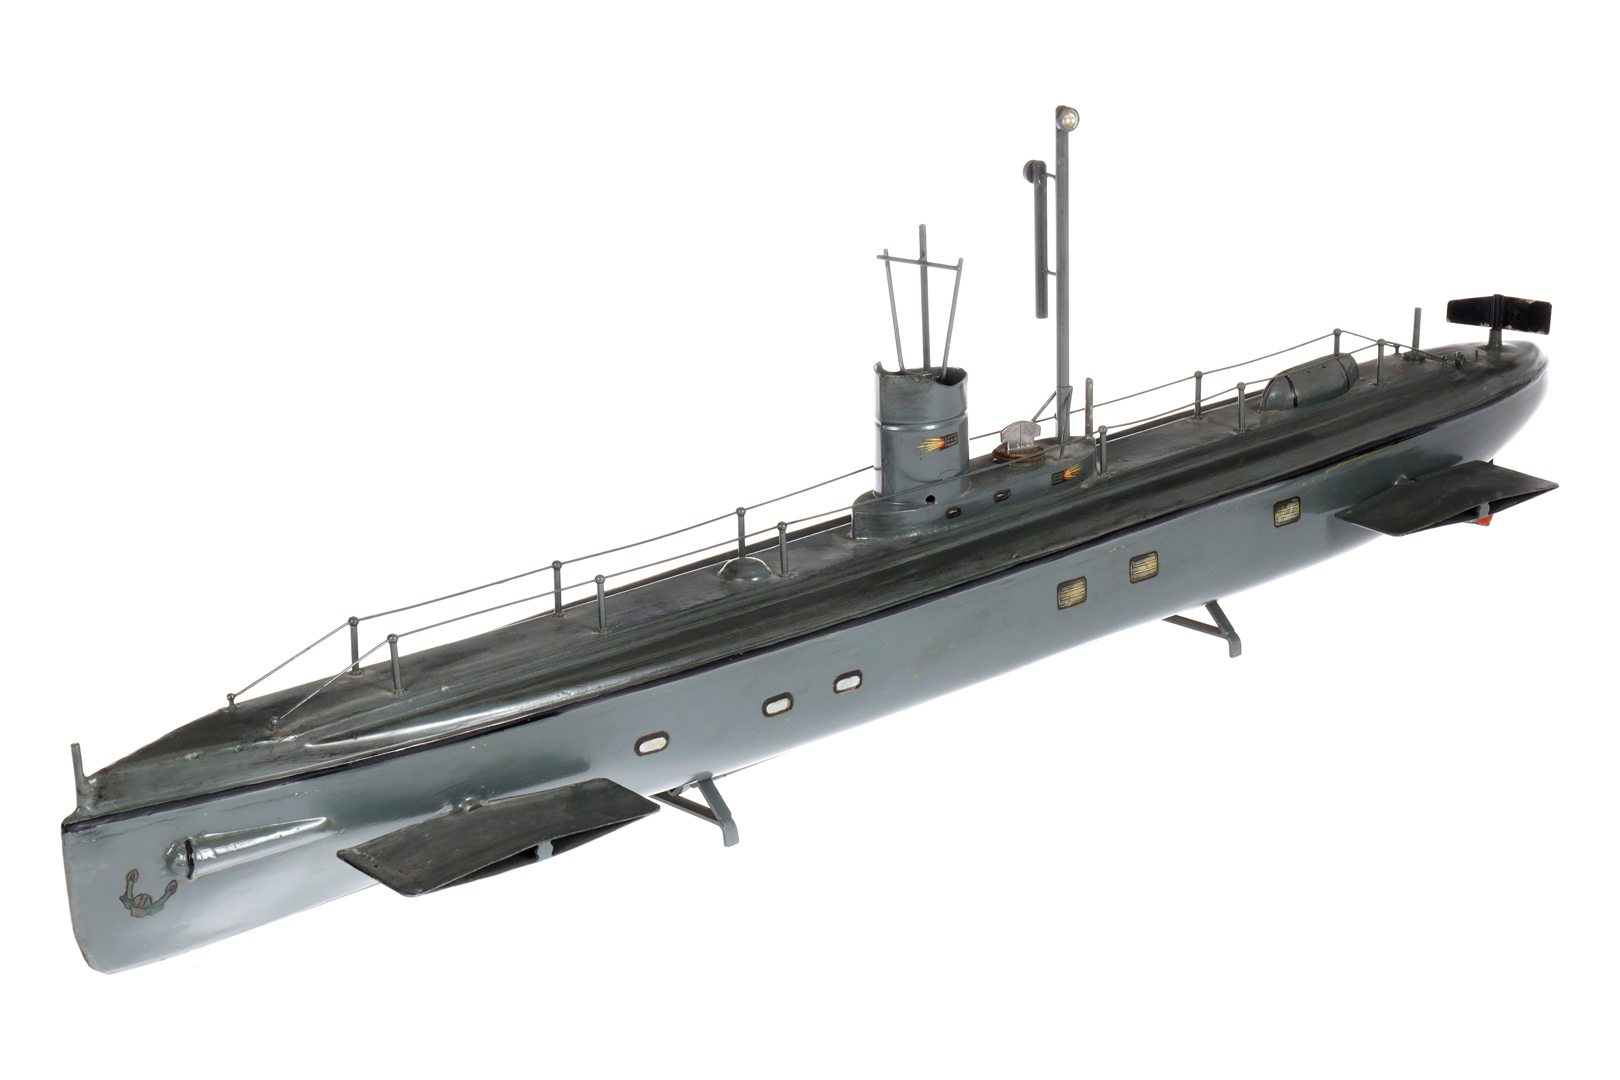 Großes Märklin U-Boot 5081, Uhrwerk intakt (hakt), farbl. rest., tw ergänzt und NV, LS und